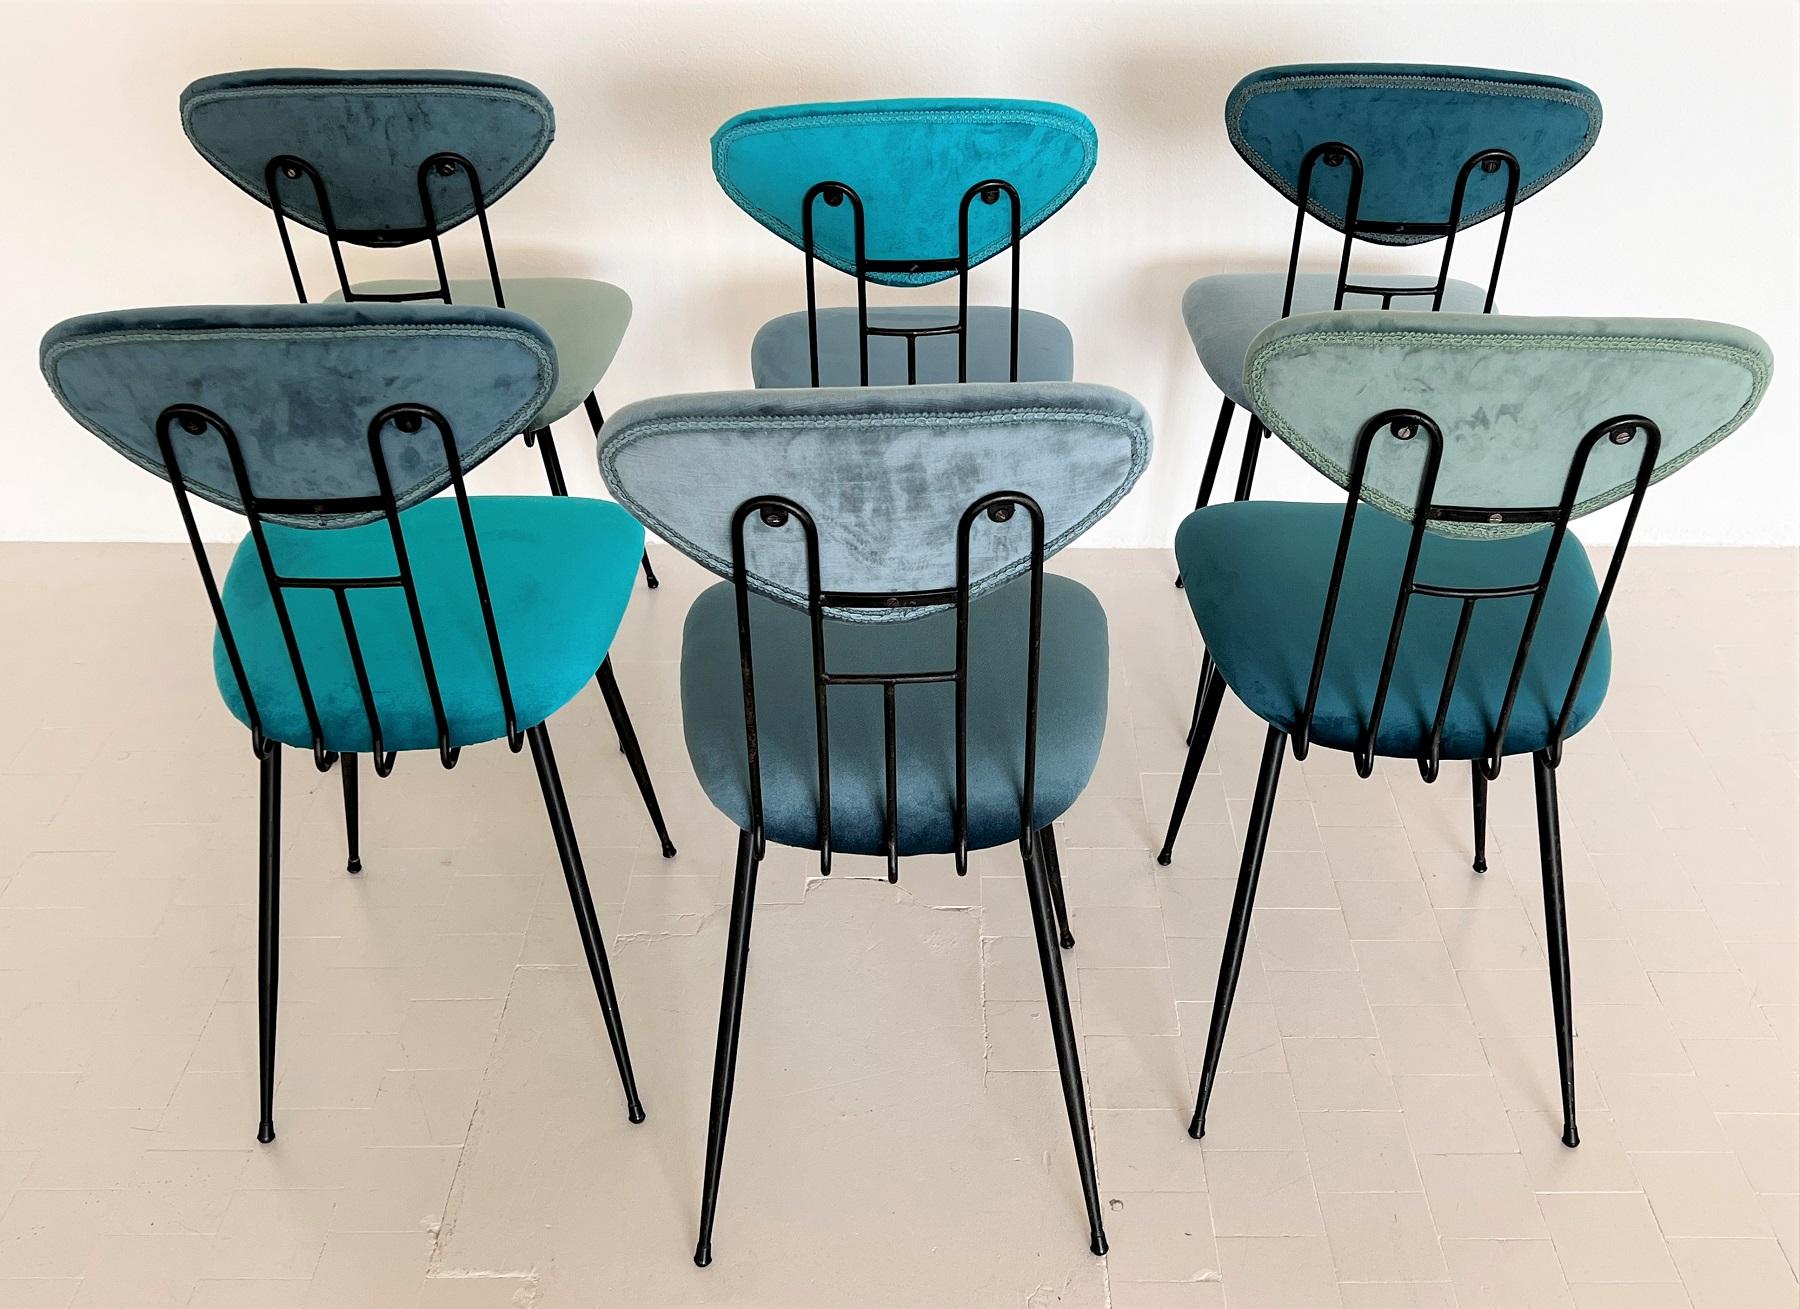 Italian Midcentury Dining Room Chairs Re-Upholstered in Velvet, 1960s For Sale 7